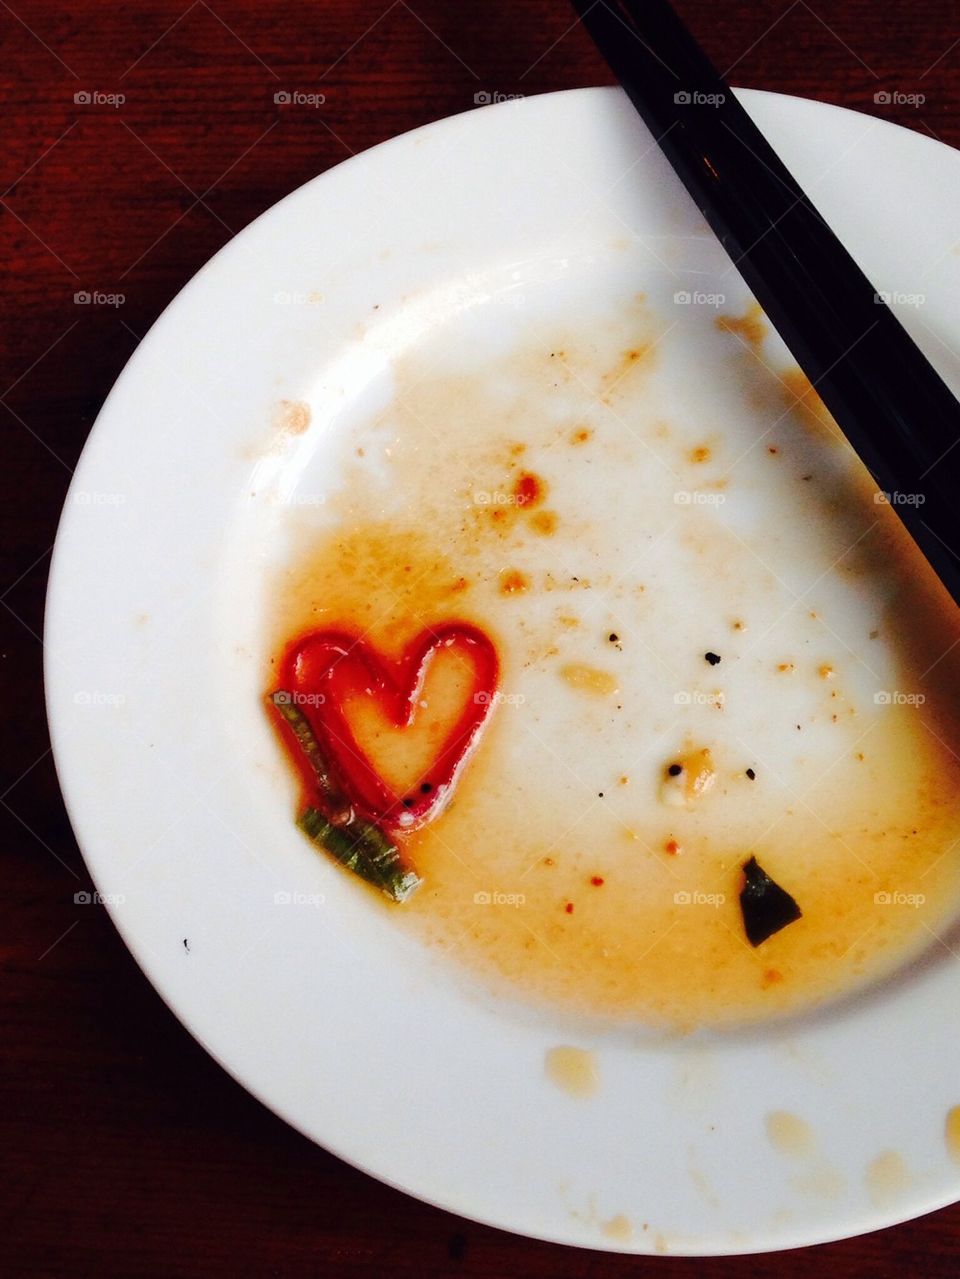 A heart shape and chopsticks on a plate